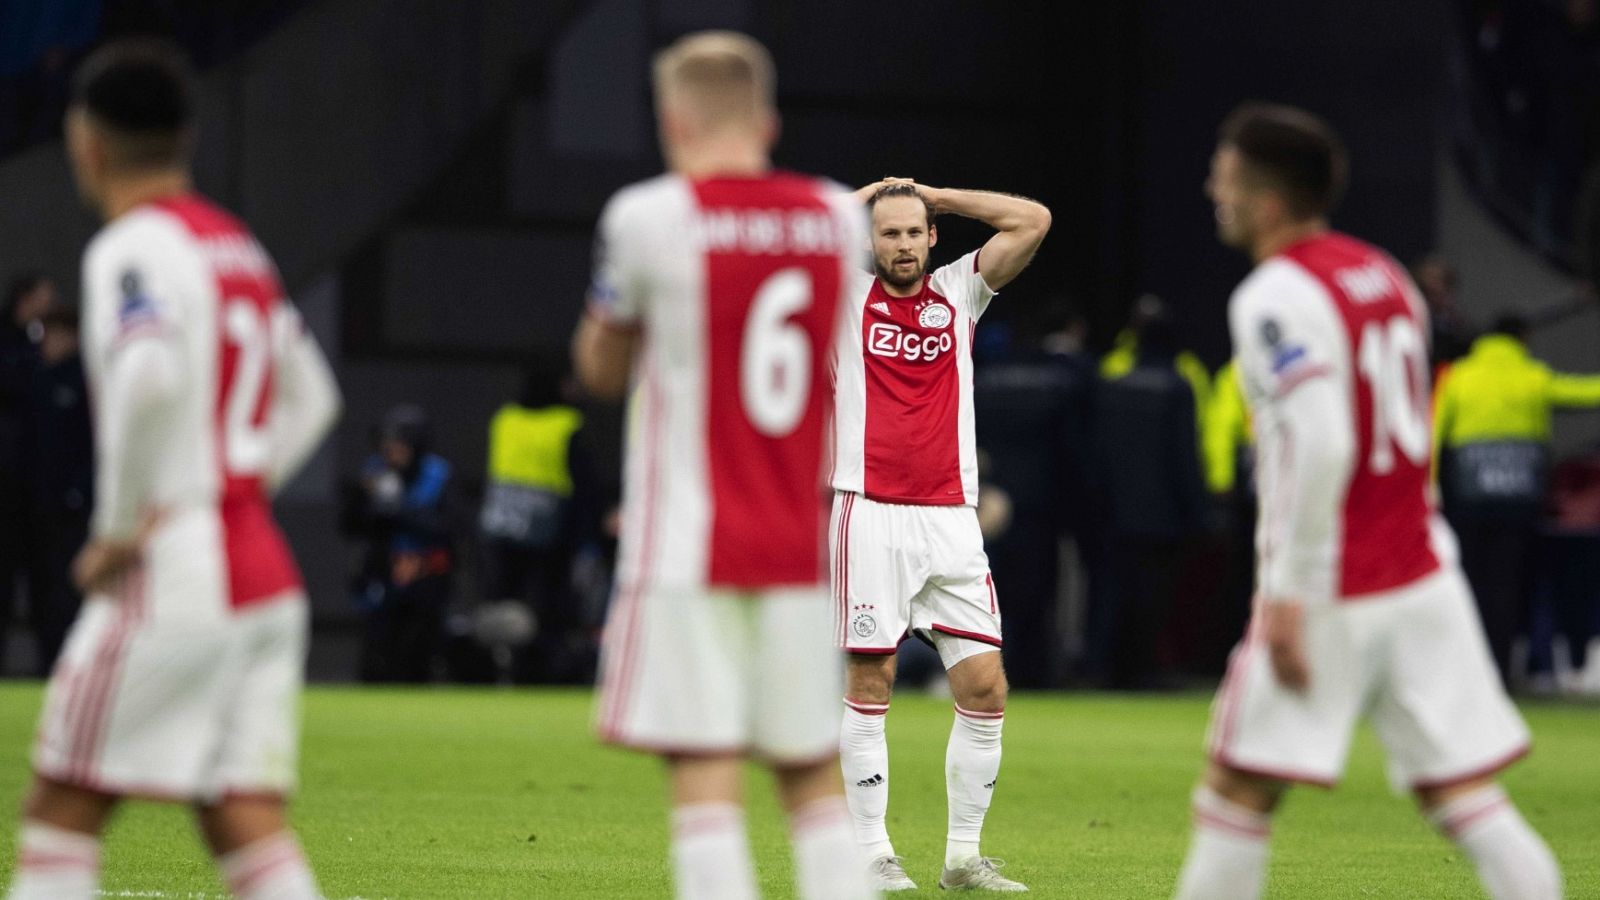  La reacción de Danny Blind, jugador del Ajax de Ámsterdam, durante un partido de Champions League